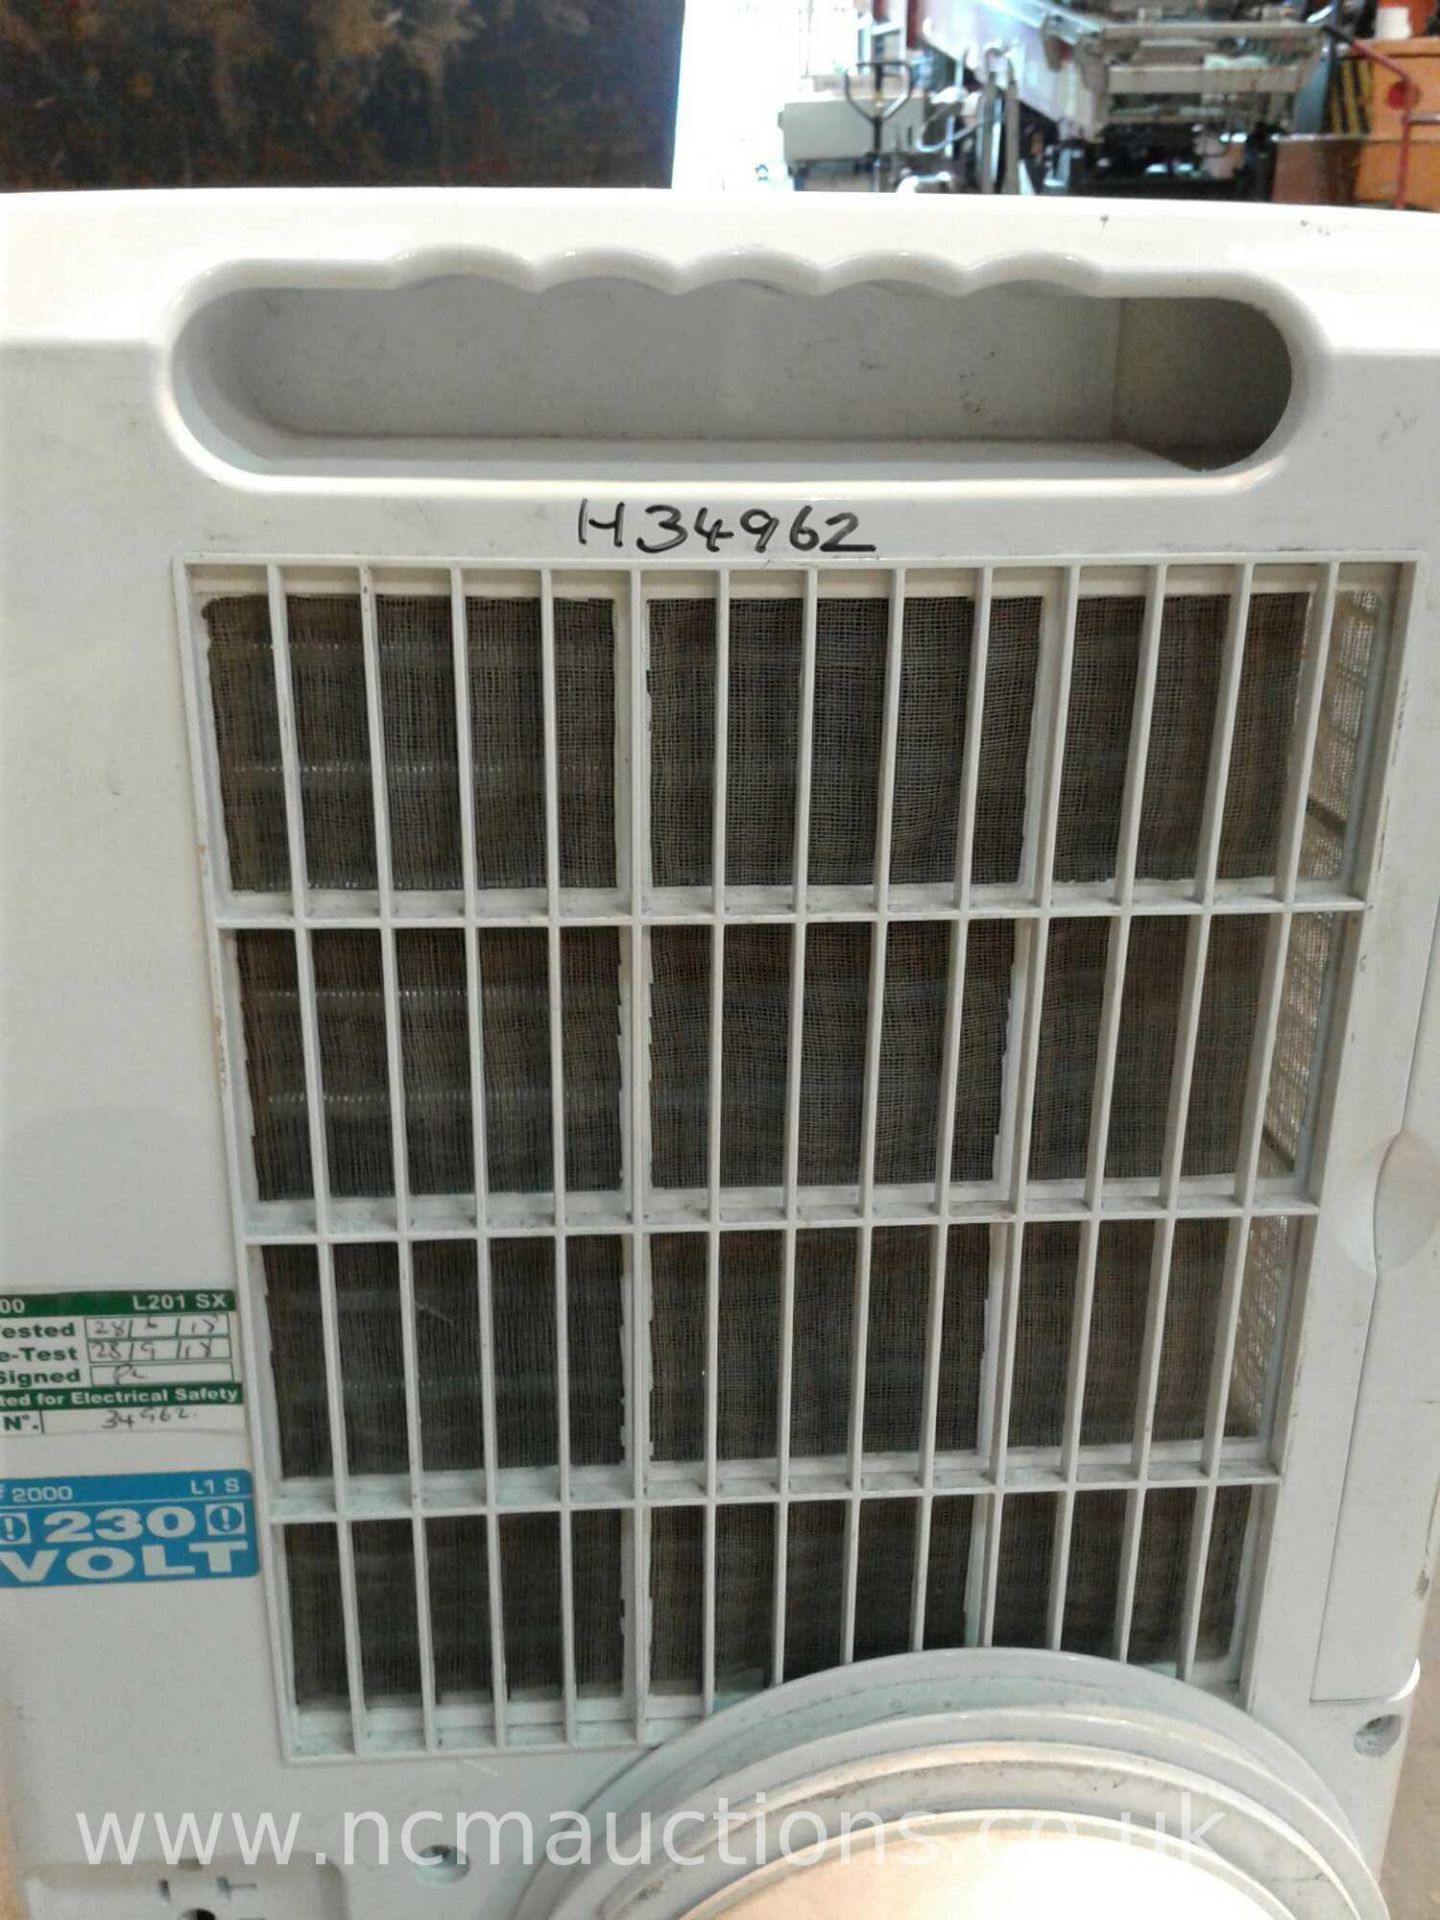 Rhino air conditioner unit - Image 2 of 4